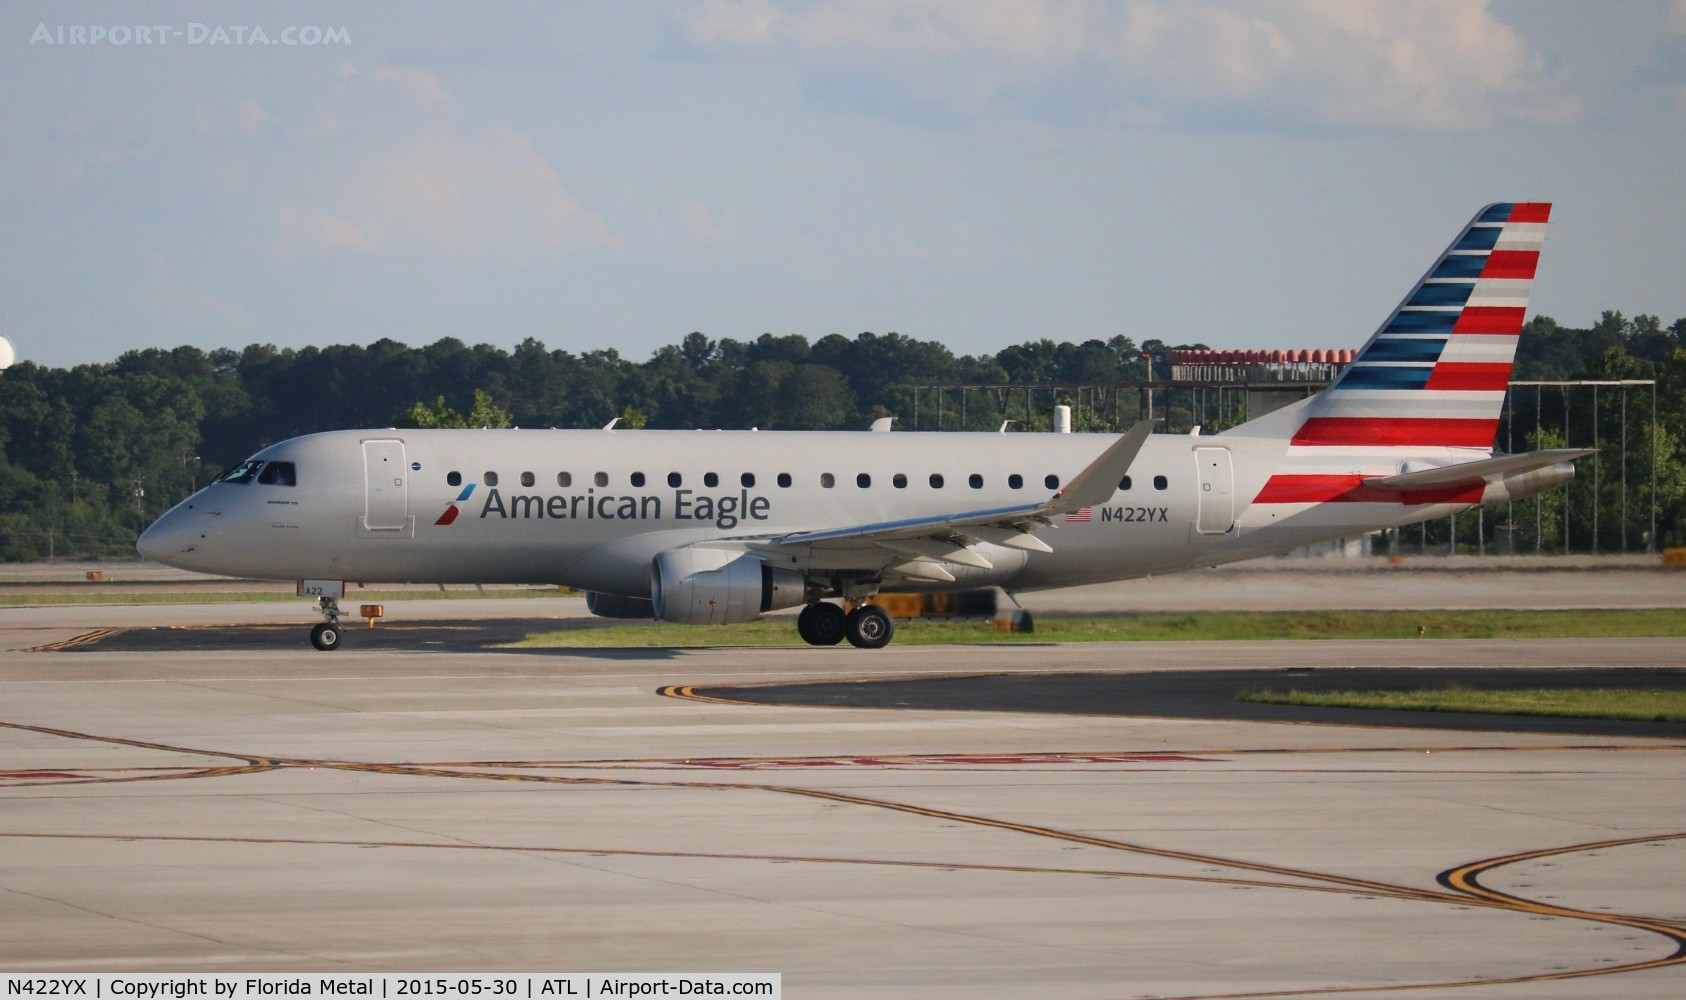 N422YX, 2014 Embraer 175LR (ERJ-170-200LR) C/N 17000387, American Eagle